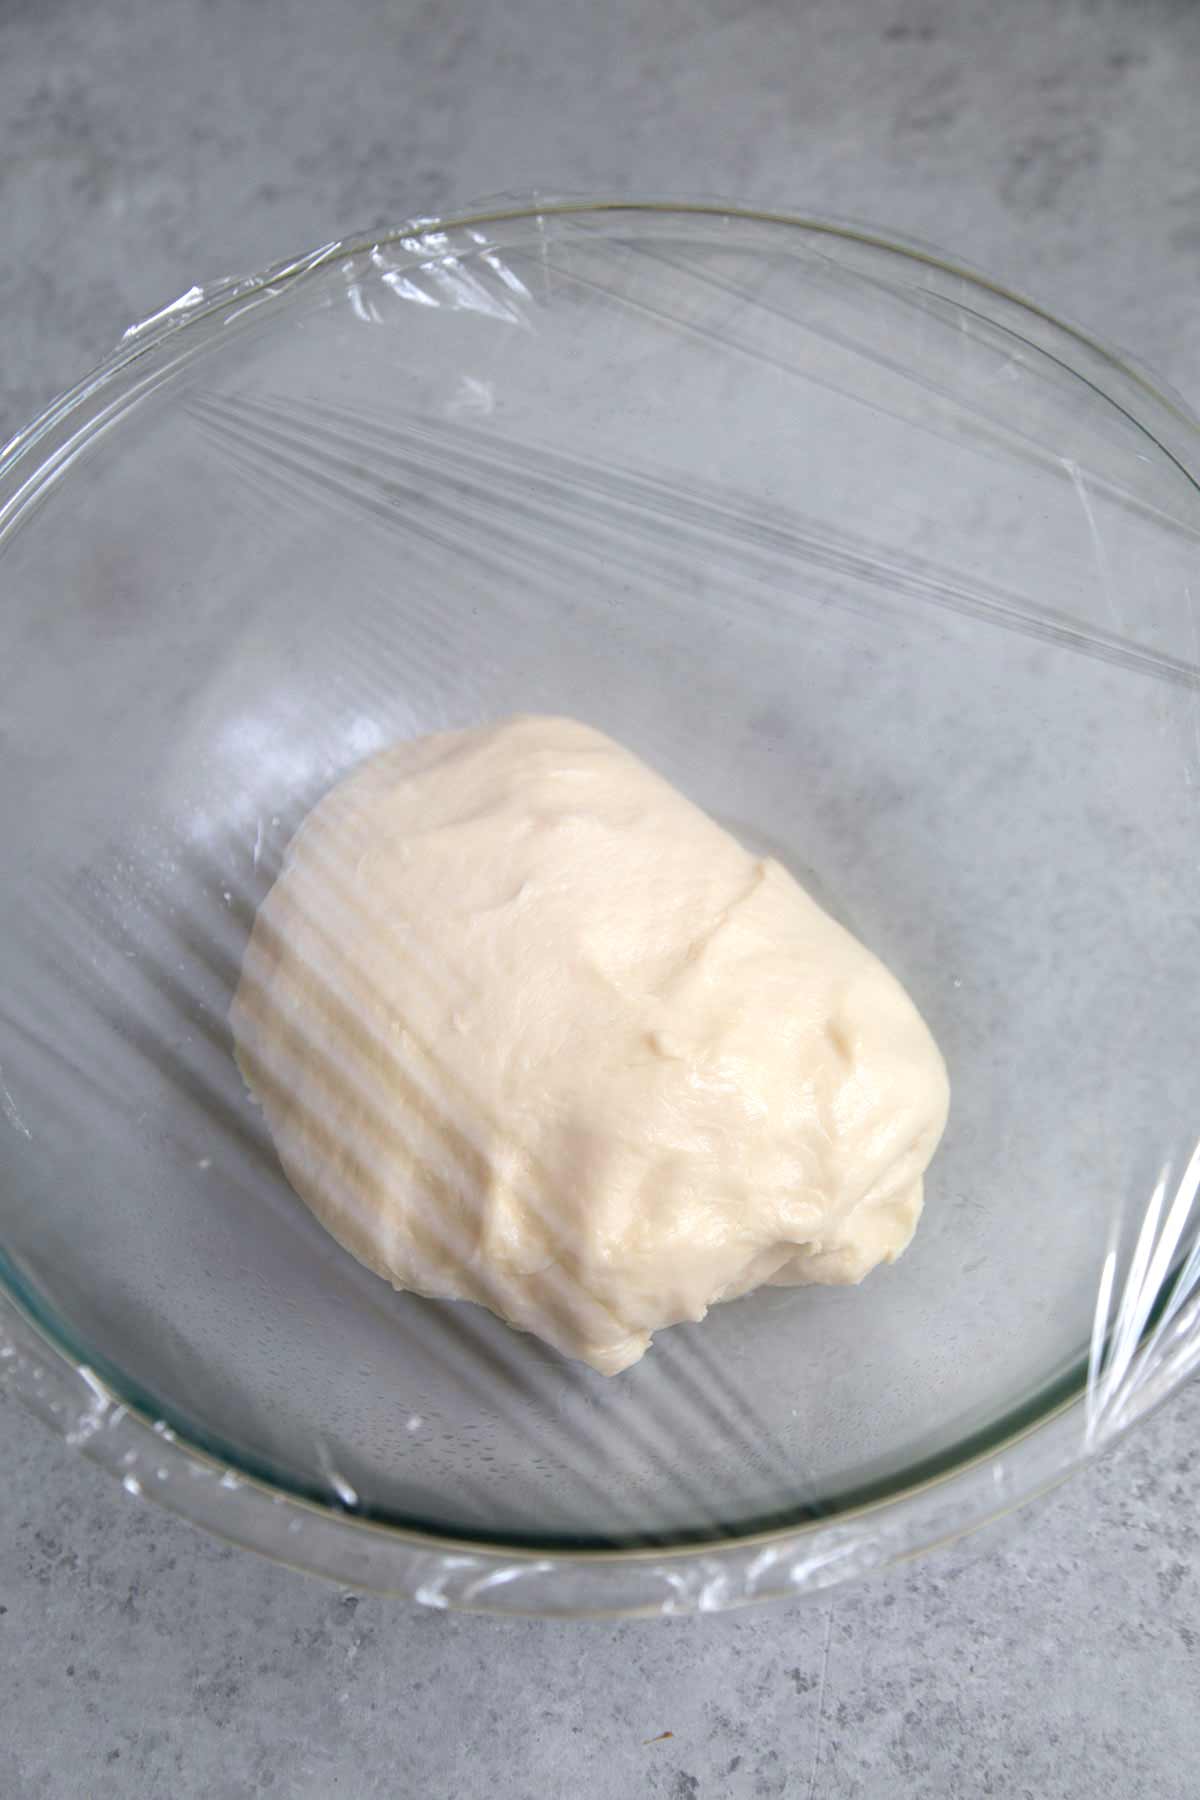 Milk bread dough for coconut buns